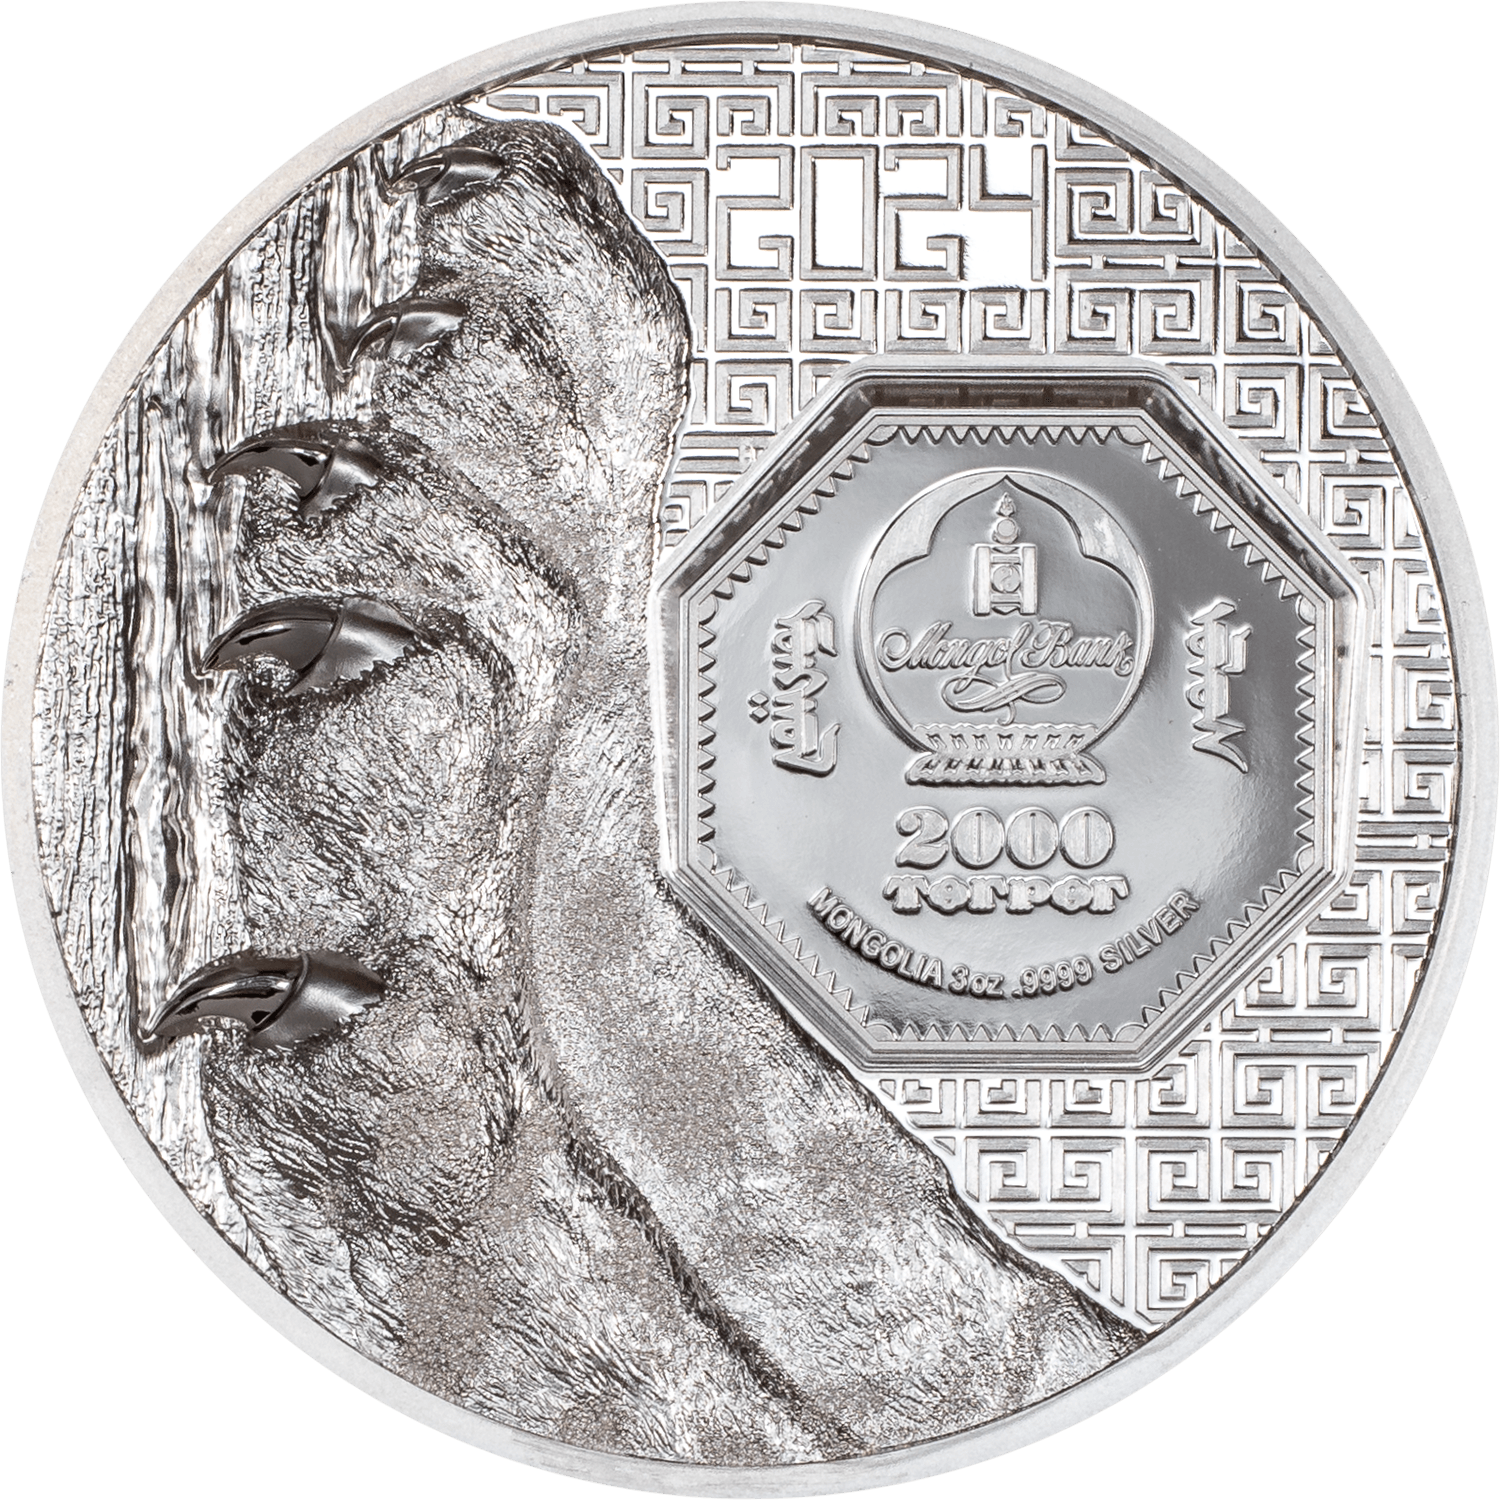 SNOW LEOPARD Wild Mongolia 3 Oz Silver Coin 2000 Togrog Mongolia 2024 - PARTHAVA COIN